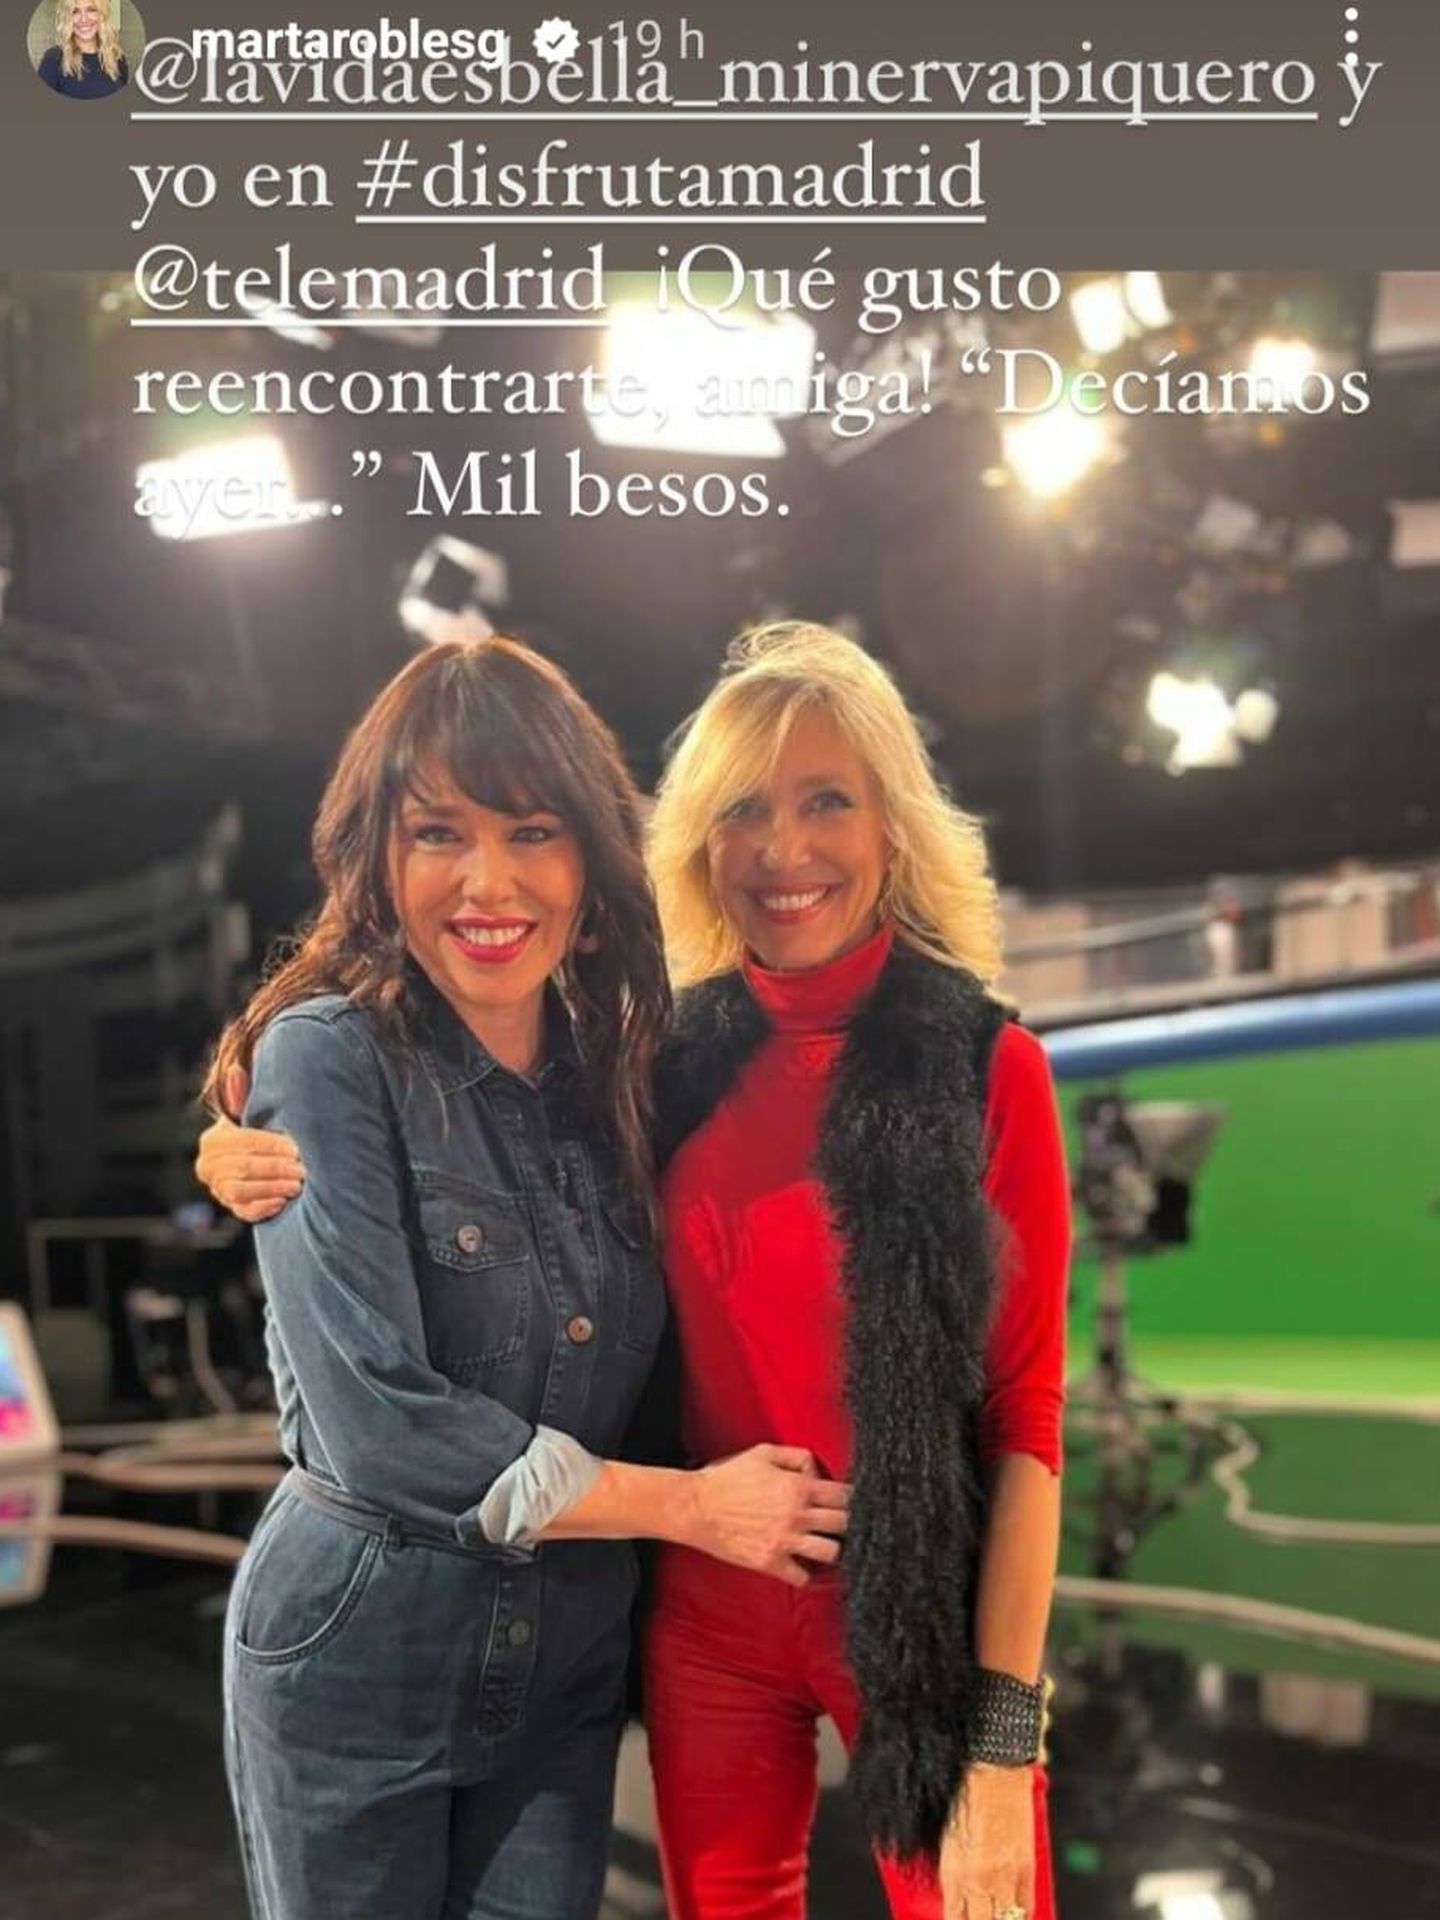 El encuentro de Minerva Piquero y Marta Robles. (Instagram/@martaroblesg)